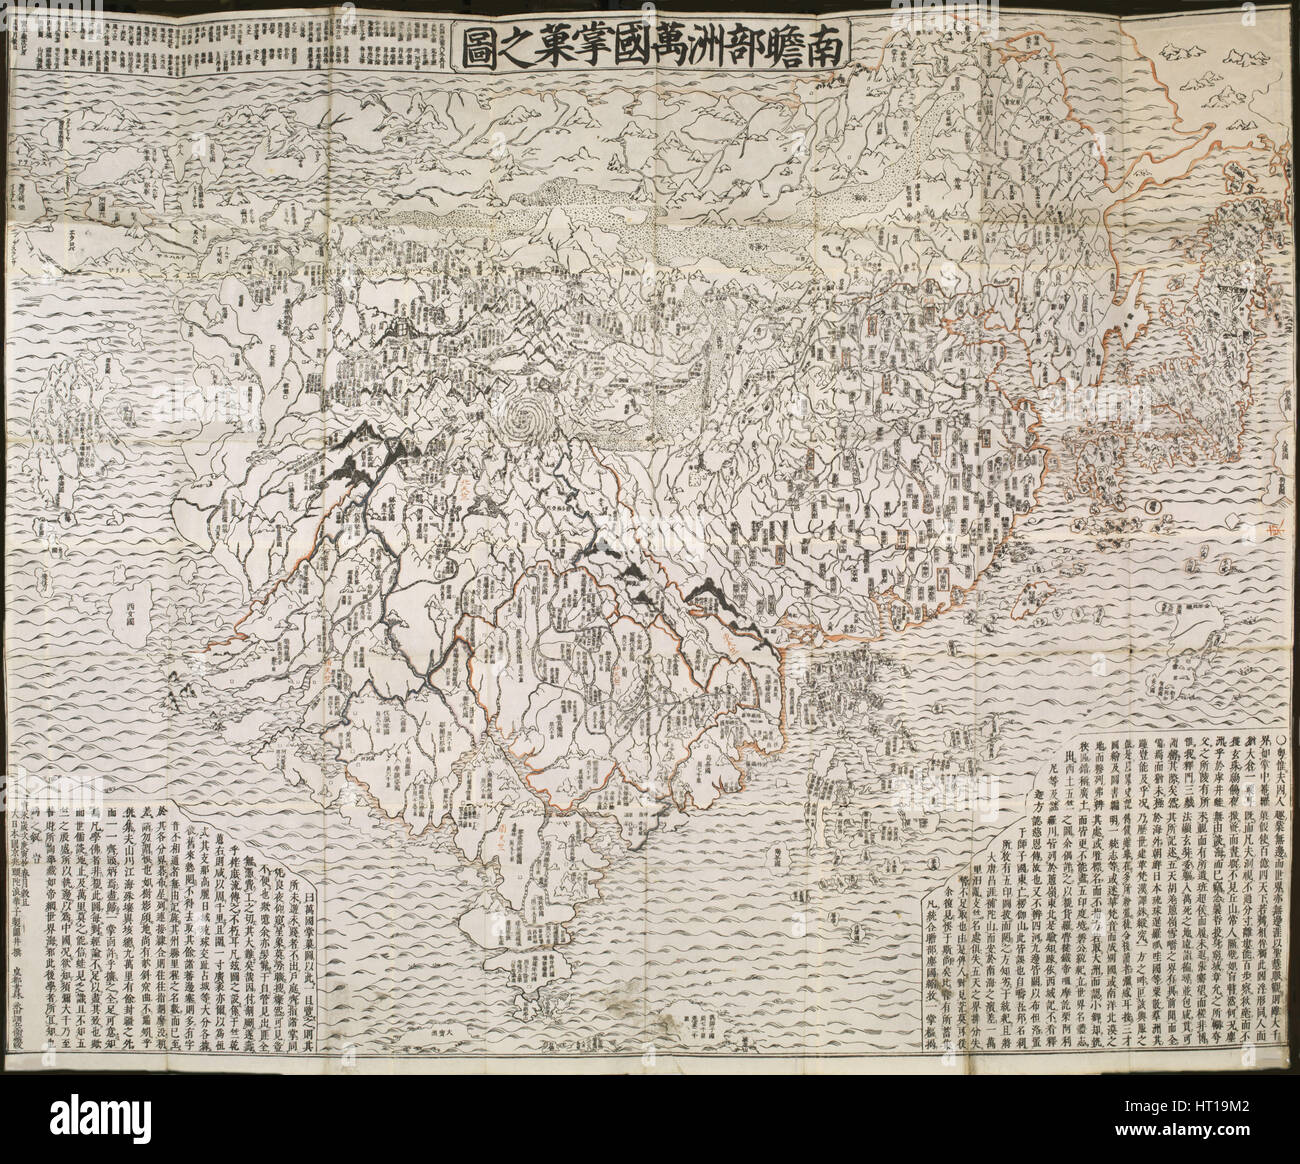 Buddhism|Buddhist Geography|Earth|India|World Maps 1830 Map Sekai daiso no zu 